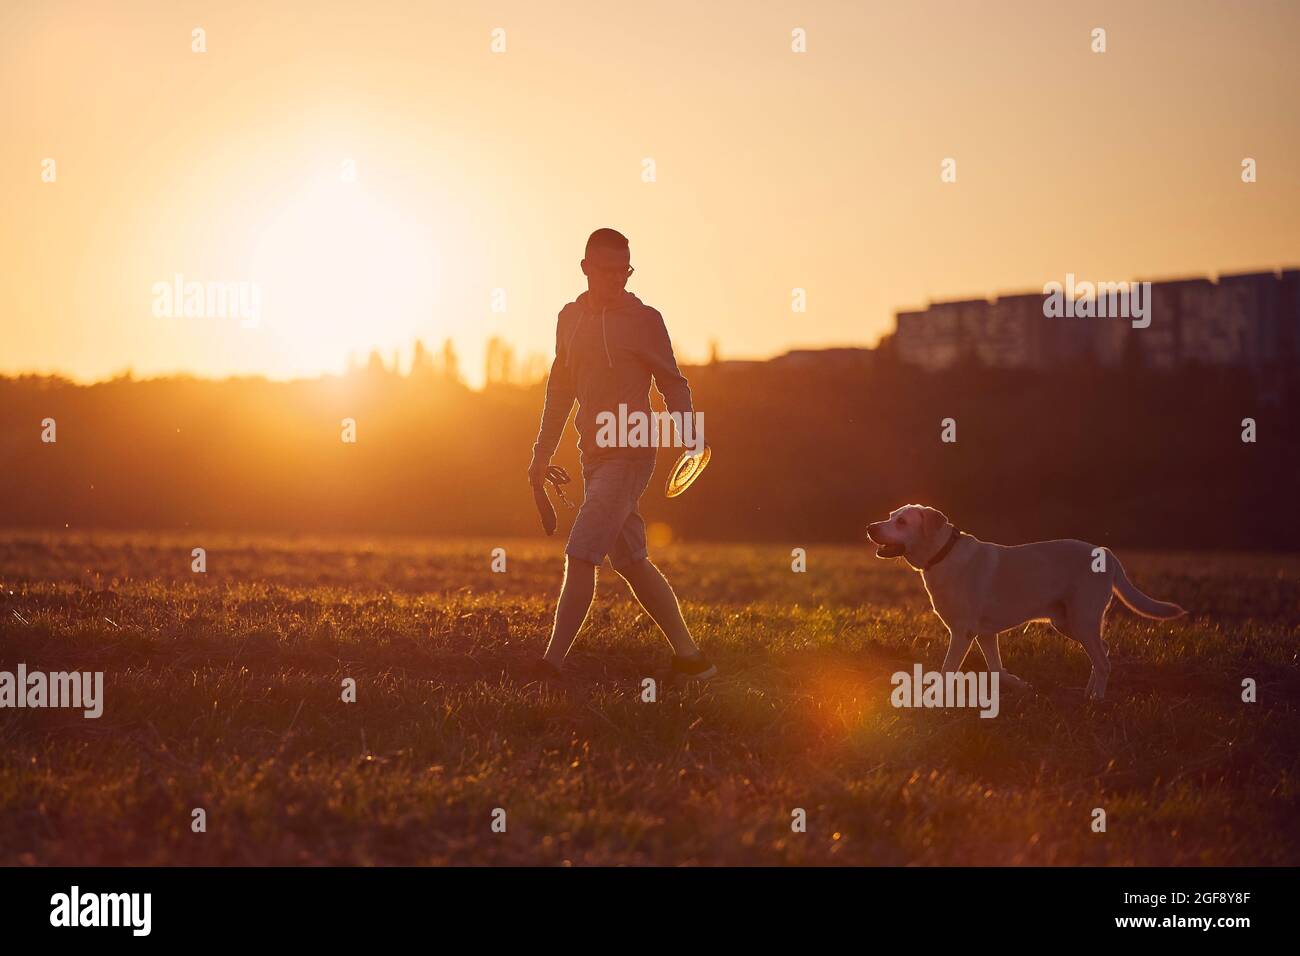 Homme avec chien au beau coucher du soleil. Silhouette du propriétaire de l'animal avec labrador Retriver pendant la marche sur le terrain. Banque D'Images